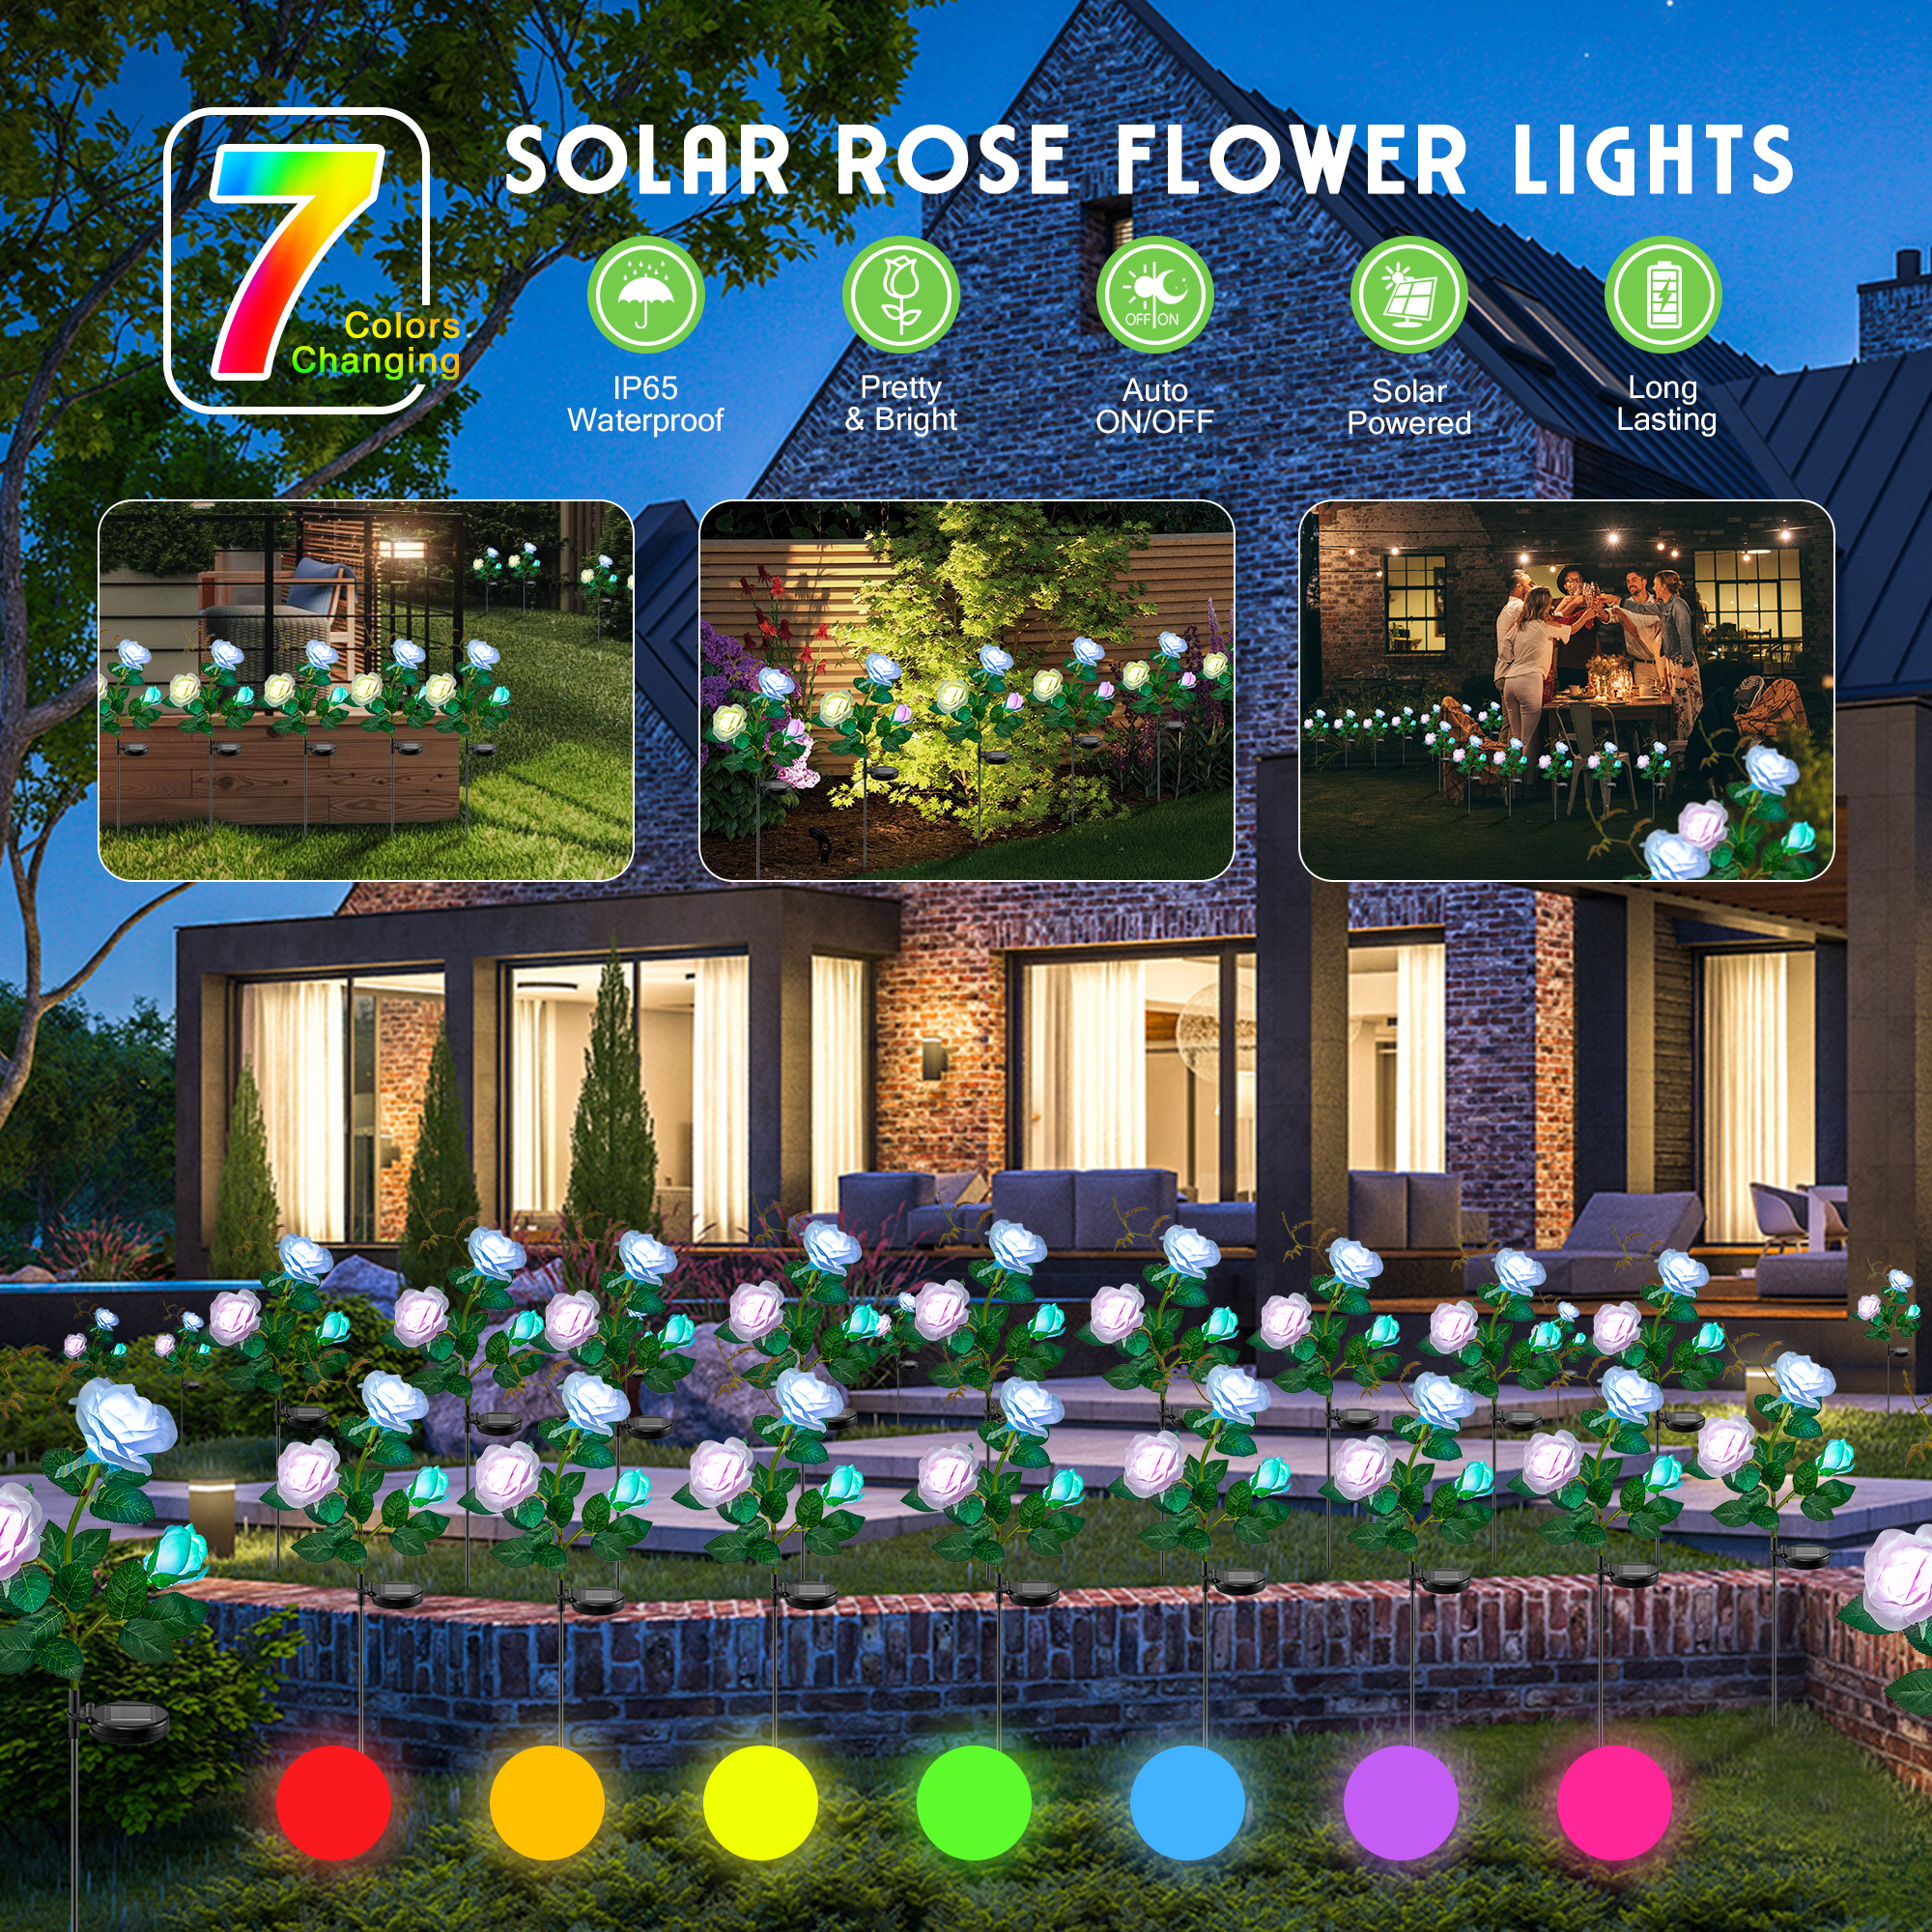 Solar Rose Flower Lights